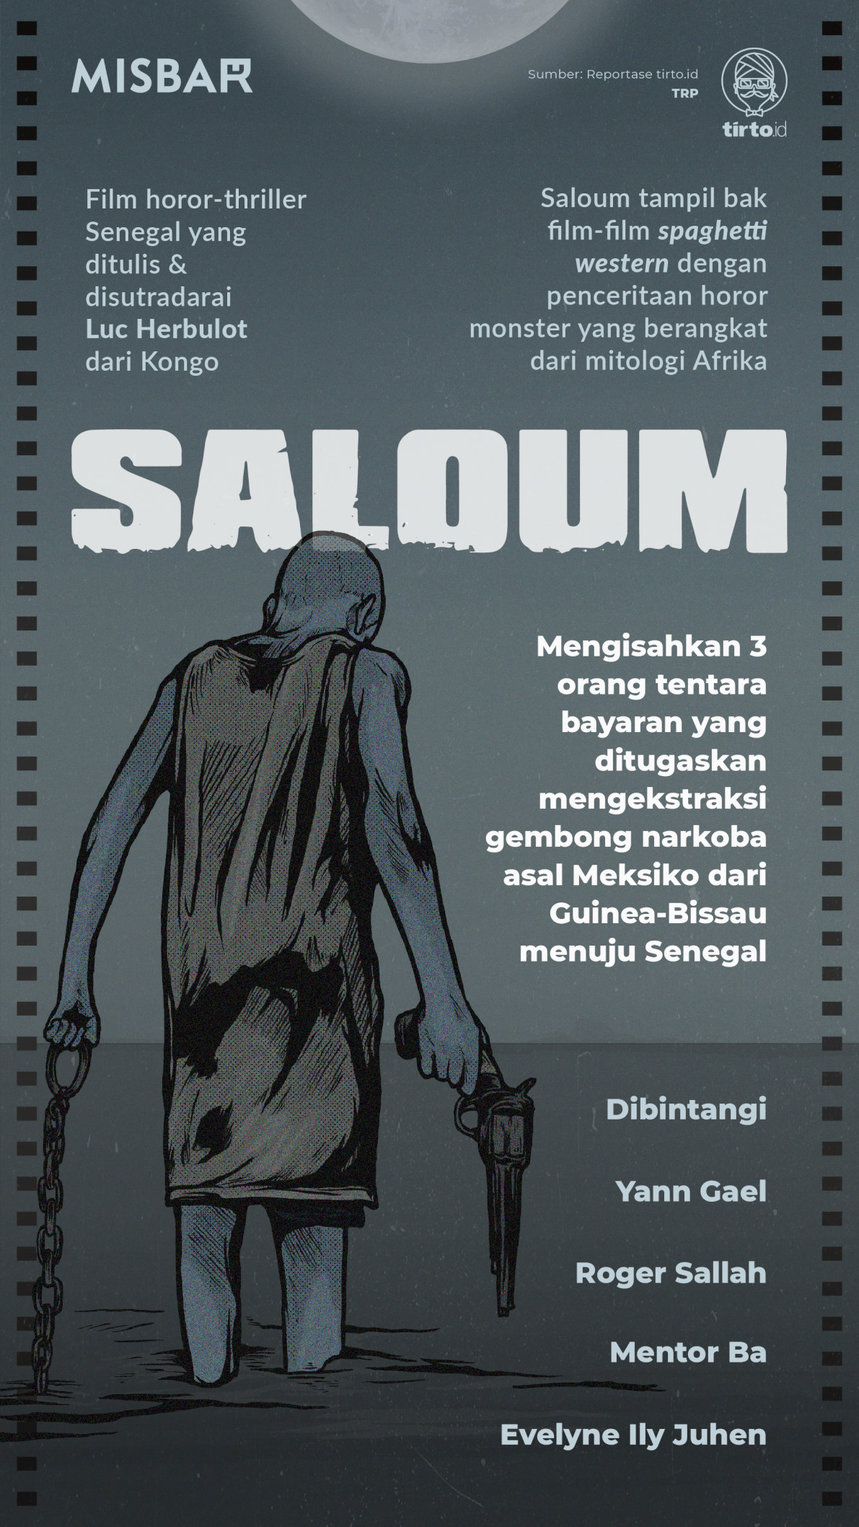 Infografik Misbar Saloum